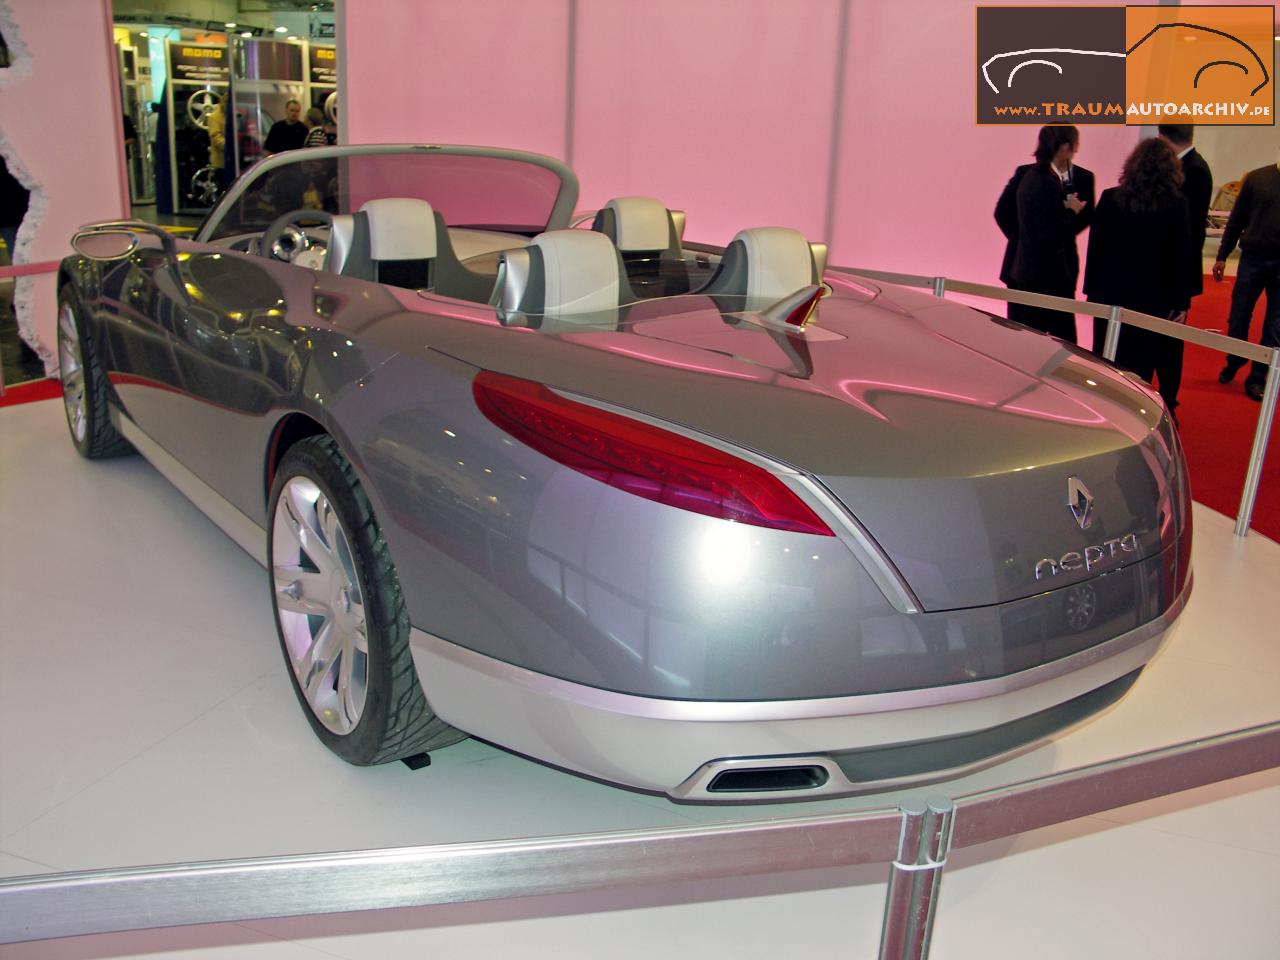 D_Renault Nepta '2007.jpg 115.8K